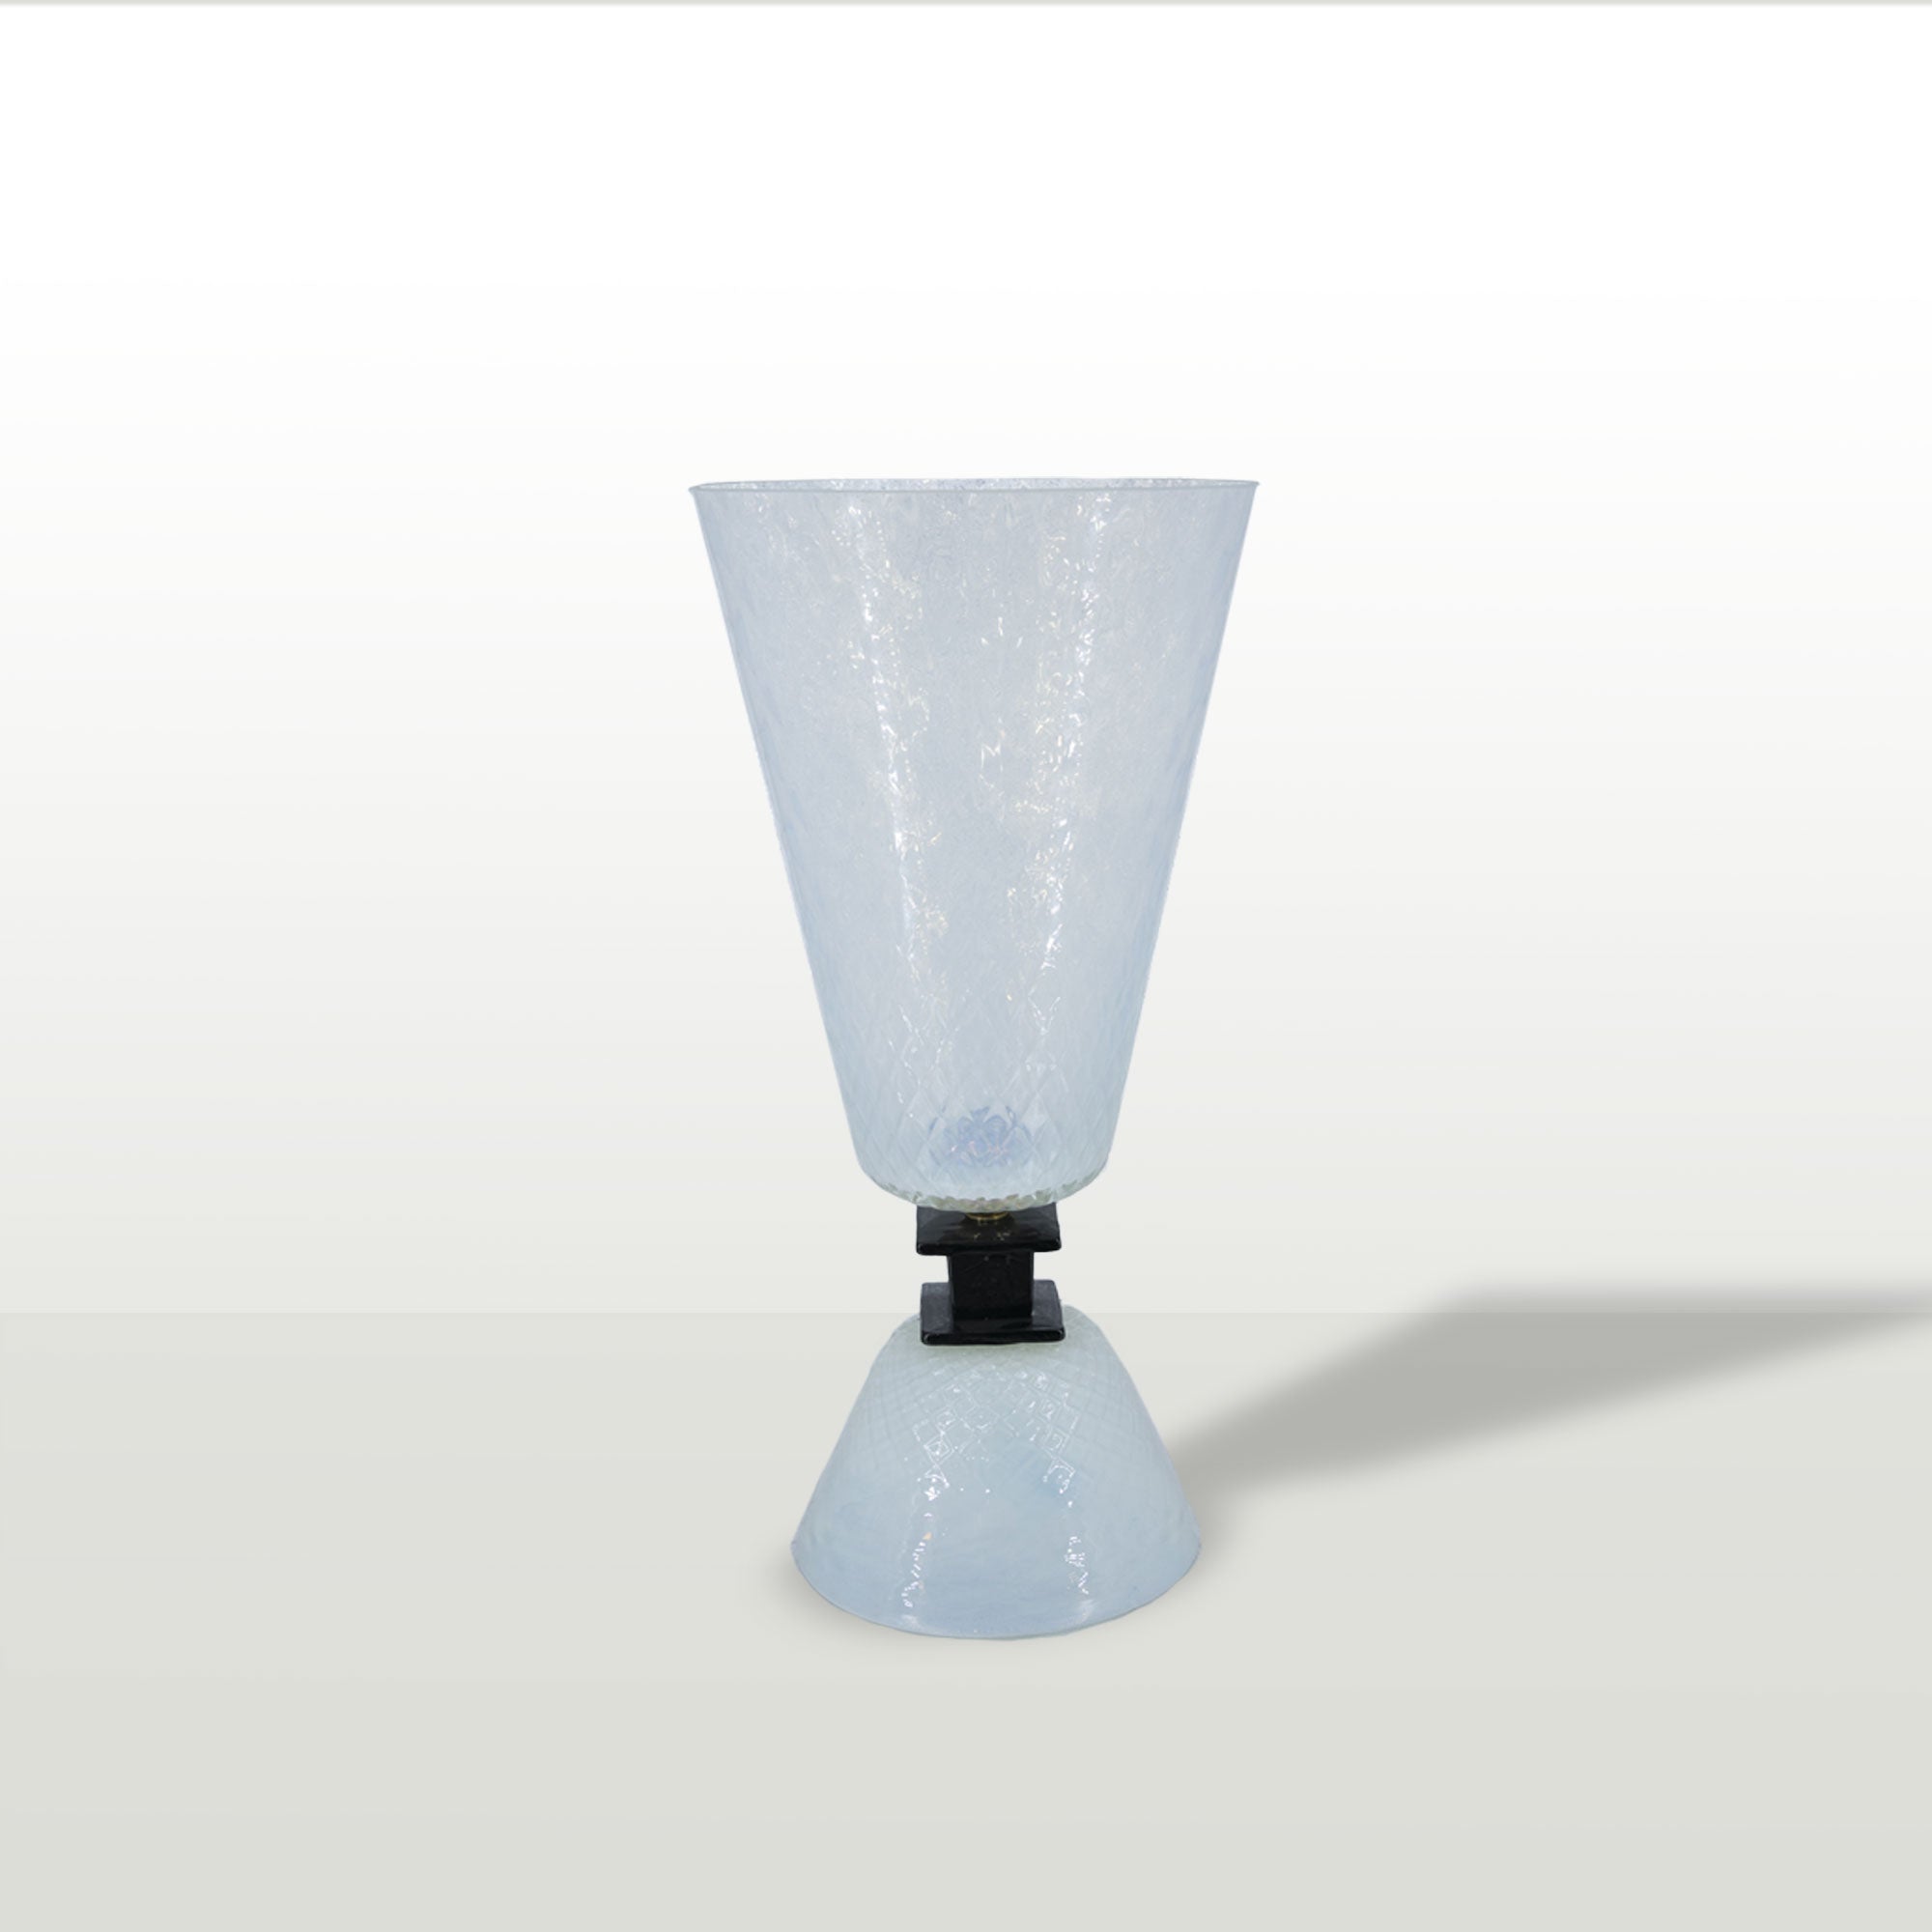 Lampada a forma di vaso, vetro opalino. Produzione recente made in Italy